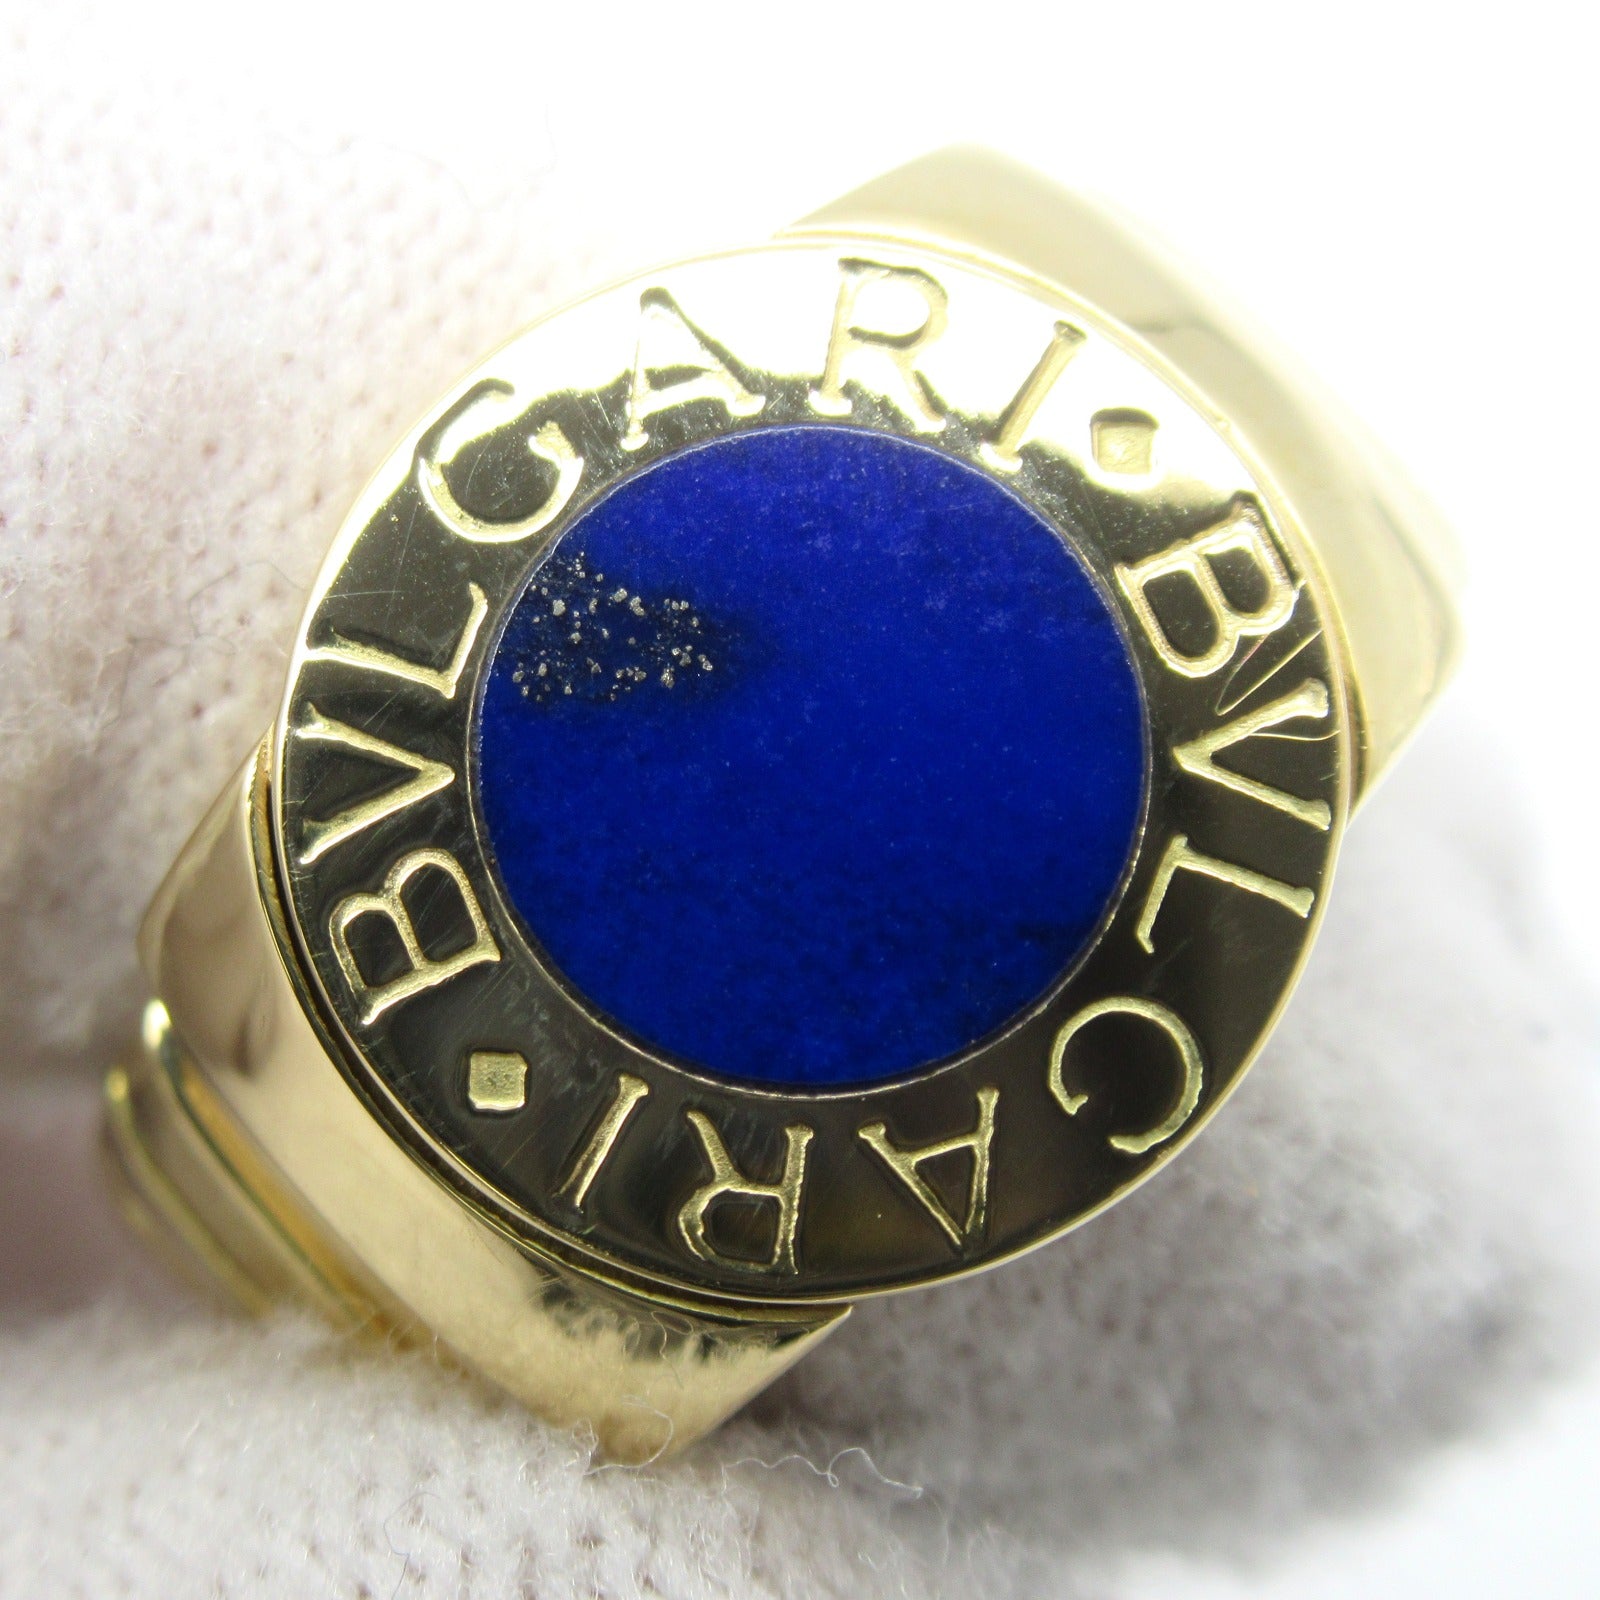 Bulgari BVLGARI Tubogas Rapislasli Ring Ring Ring Jewelry K18 (Yellow G) Rapislasli   Blue